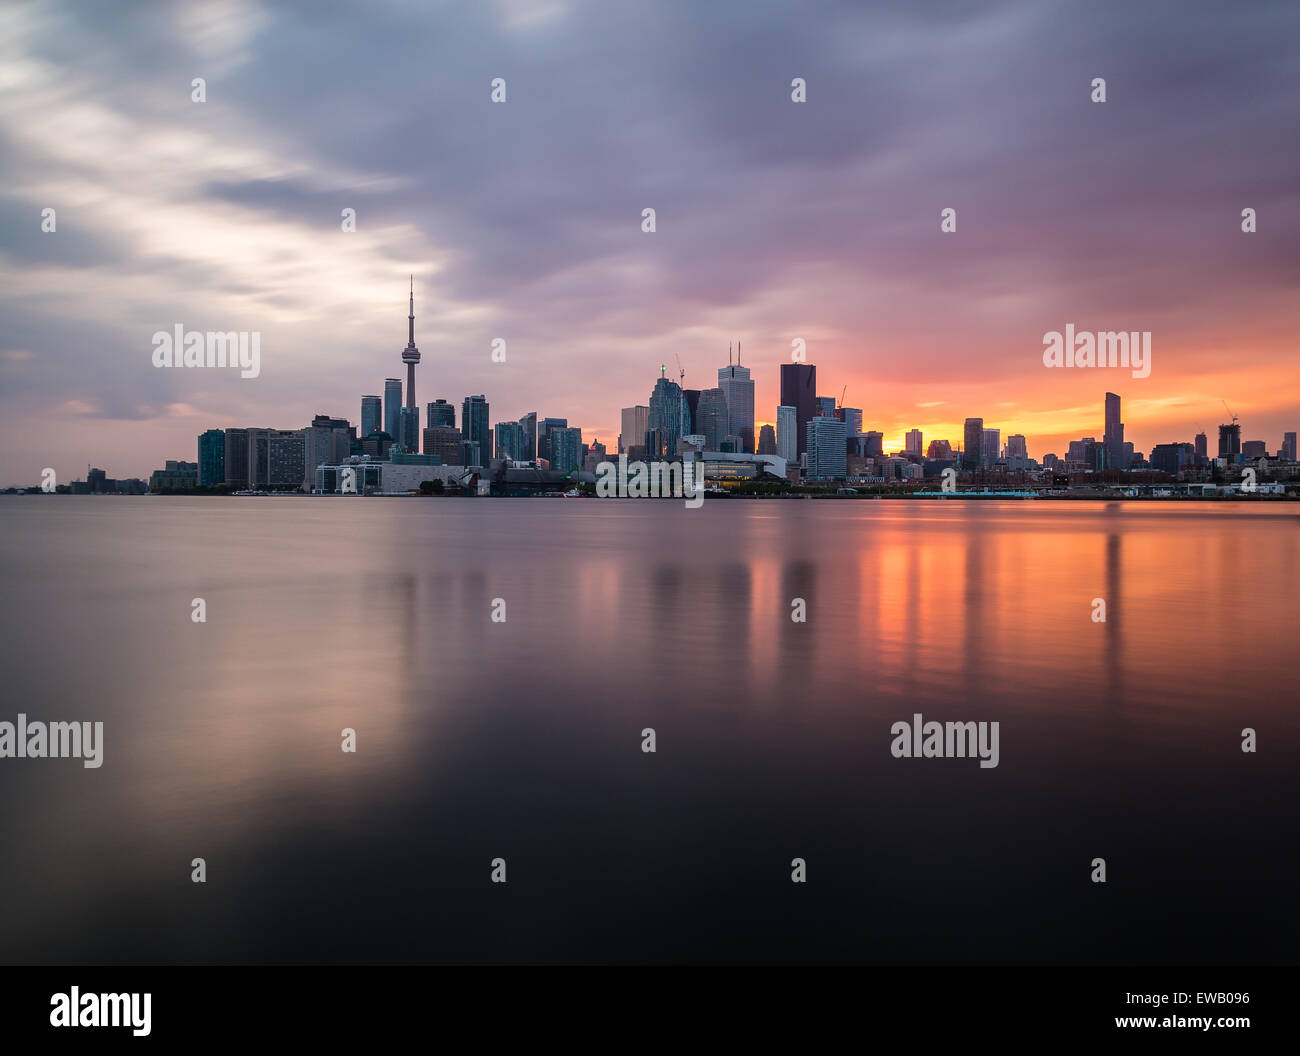 Une vue de la ville de Toronto au coucher du soleil avec des reflets dans l'eau. Prises avec une longue exposition. Banque D'Images